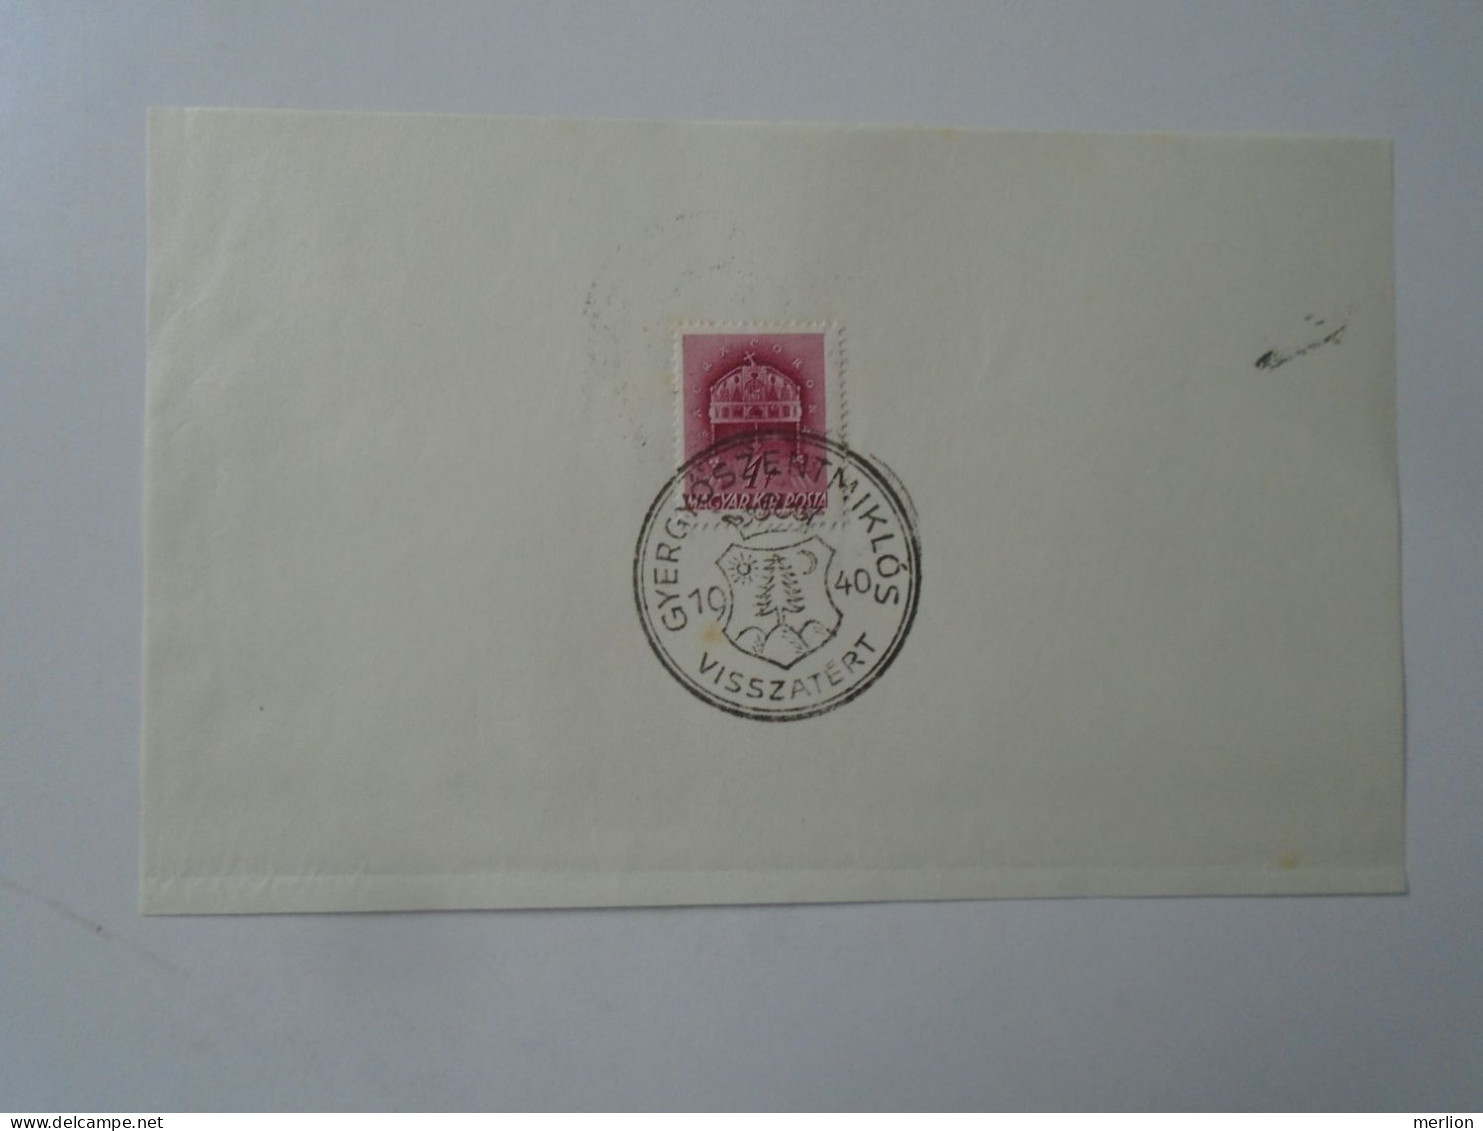 ZA451.43  Hungary -GYERGYÓSZENTMIKLÓS   Visszatért -Commemorative Postmark 1940 - Marcophilie